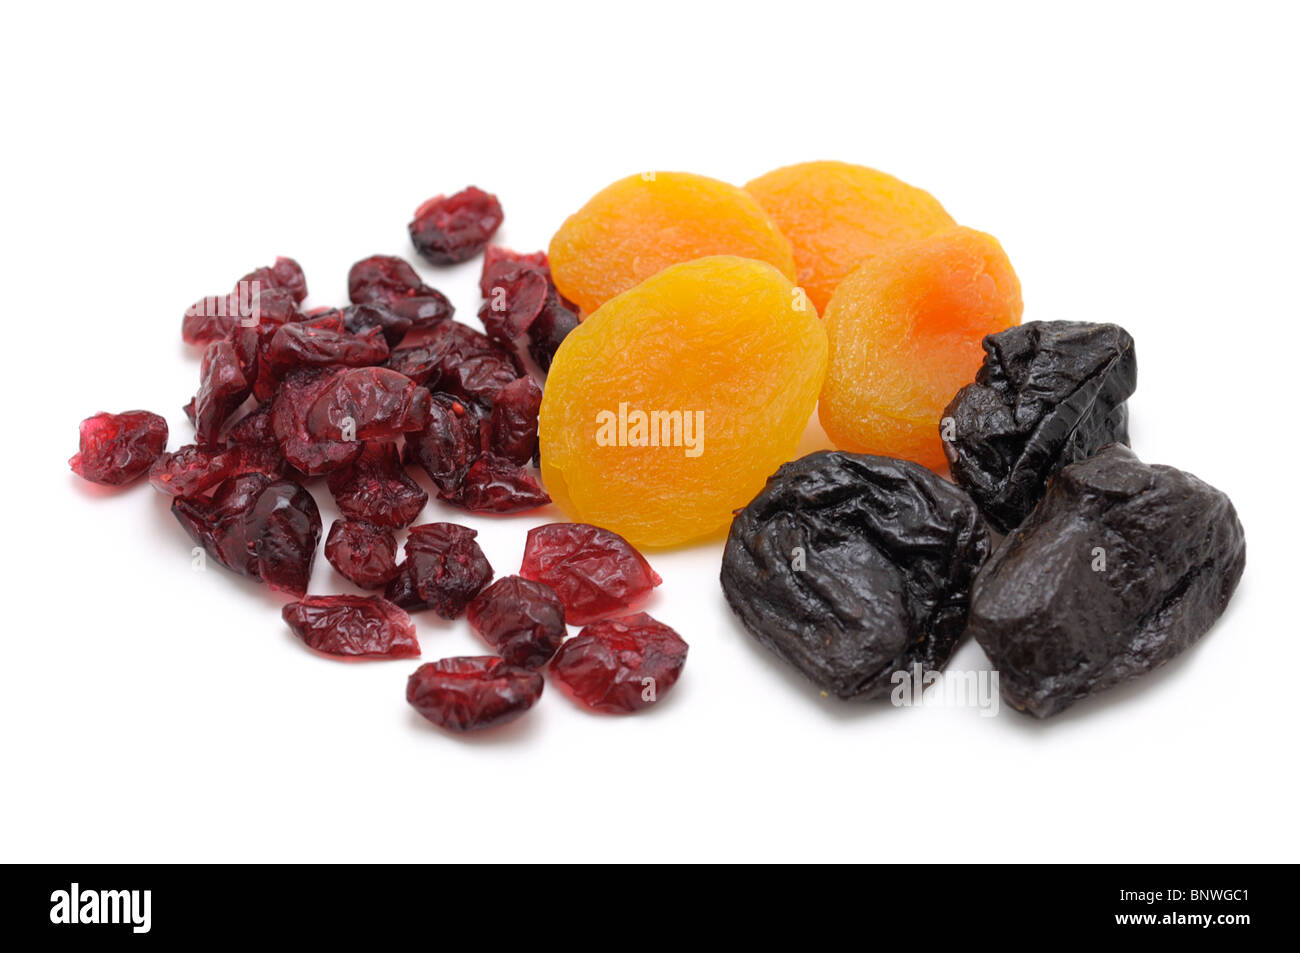 Los frutos secos (arándanos, albaricoques, ciruelas) Foto de stock